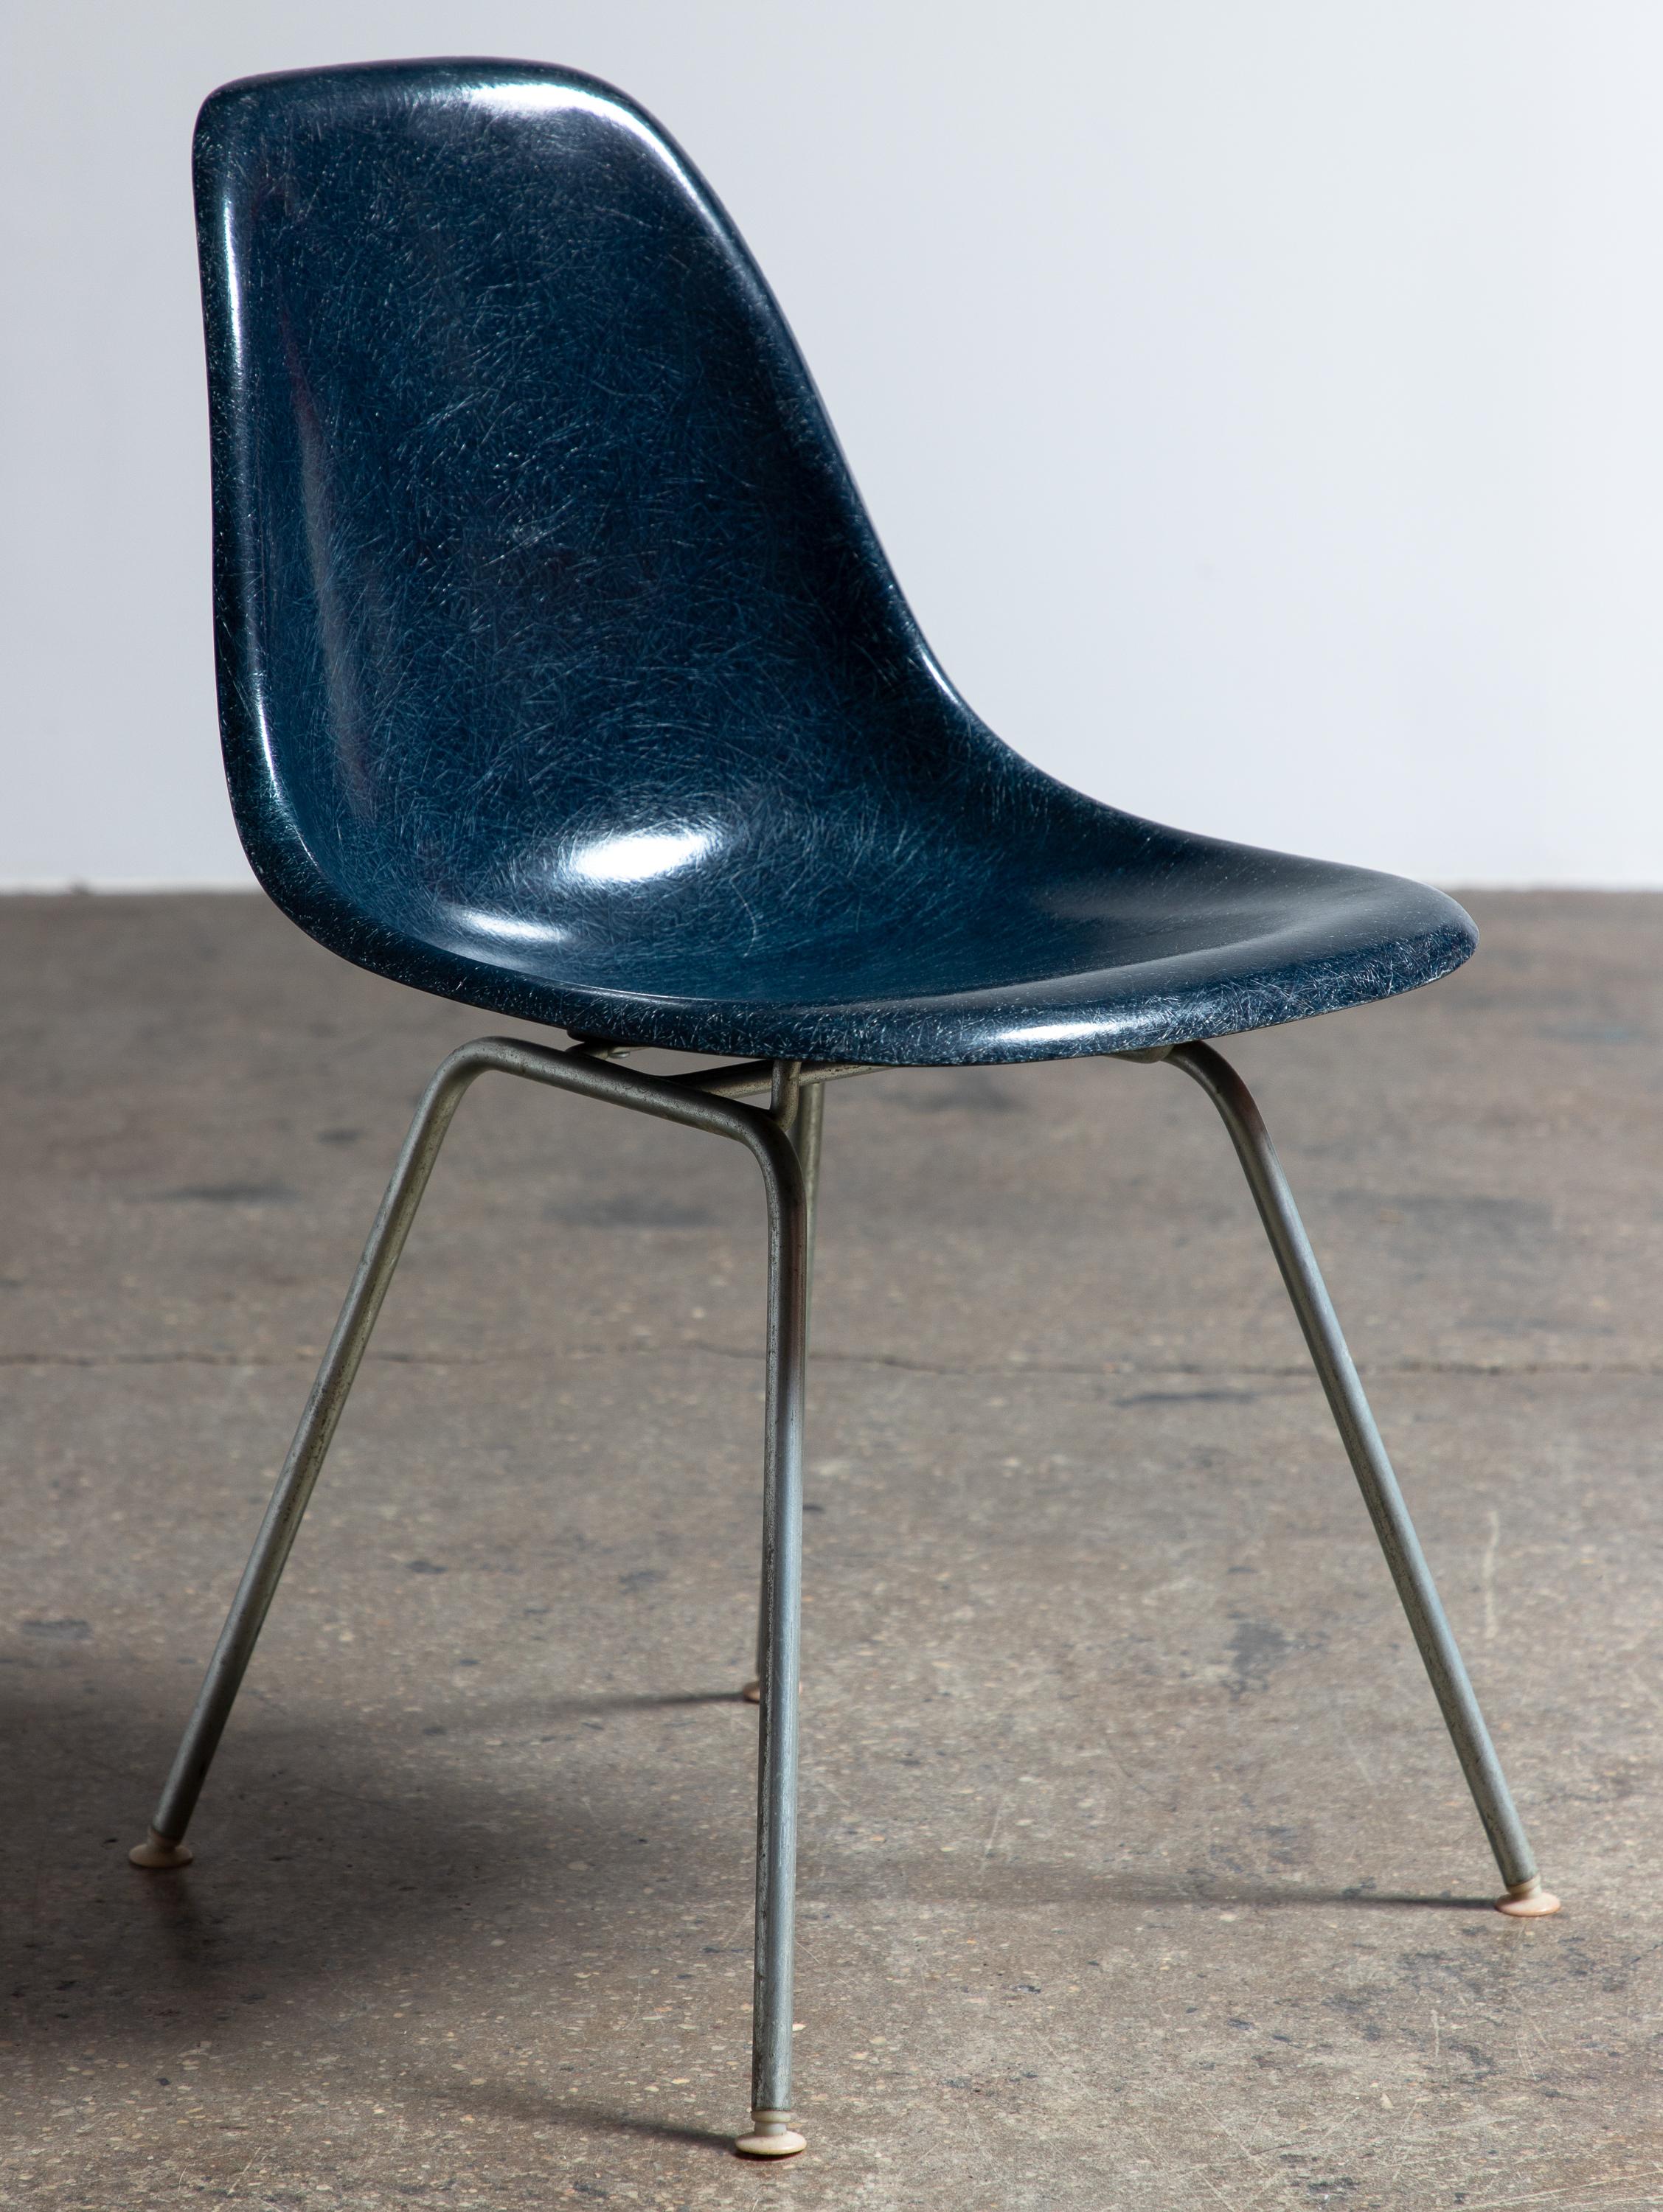 Originaler Schalenstuhl aus geformtem Fiberglas, entworfen von Charles und Ray Eames für Herman Miller. Vintage-Schalenstühle werden wegen ihrer attraktiven Patina, der ausgeprägten Fadenstruktur und der schönen Farbtiefe des Glasfasermaterials